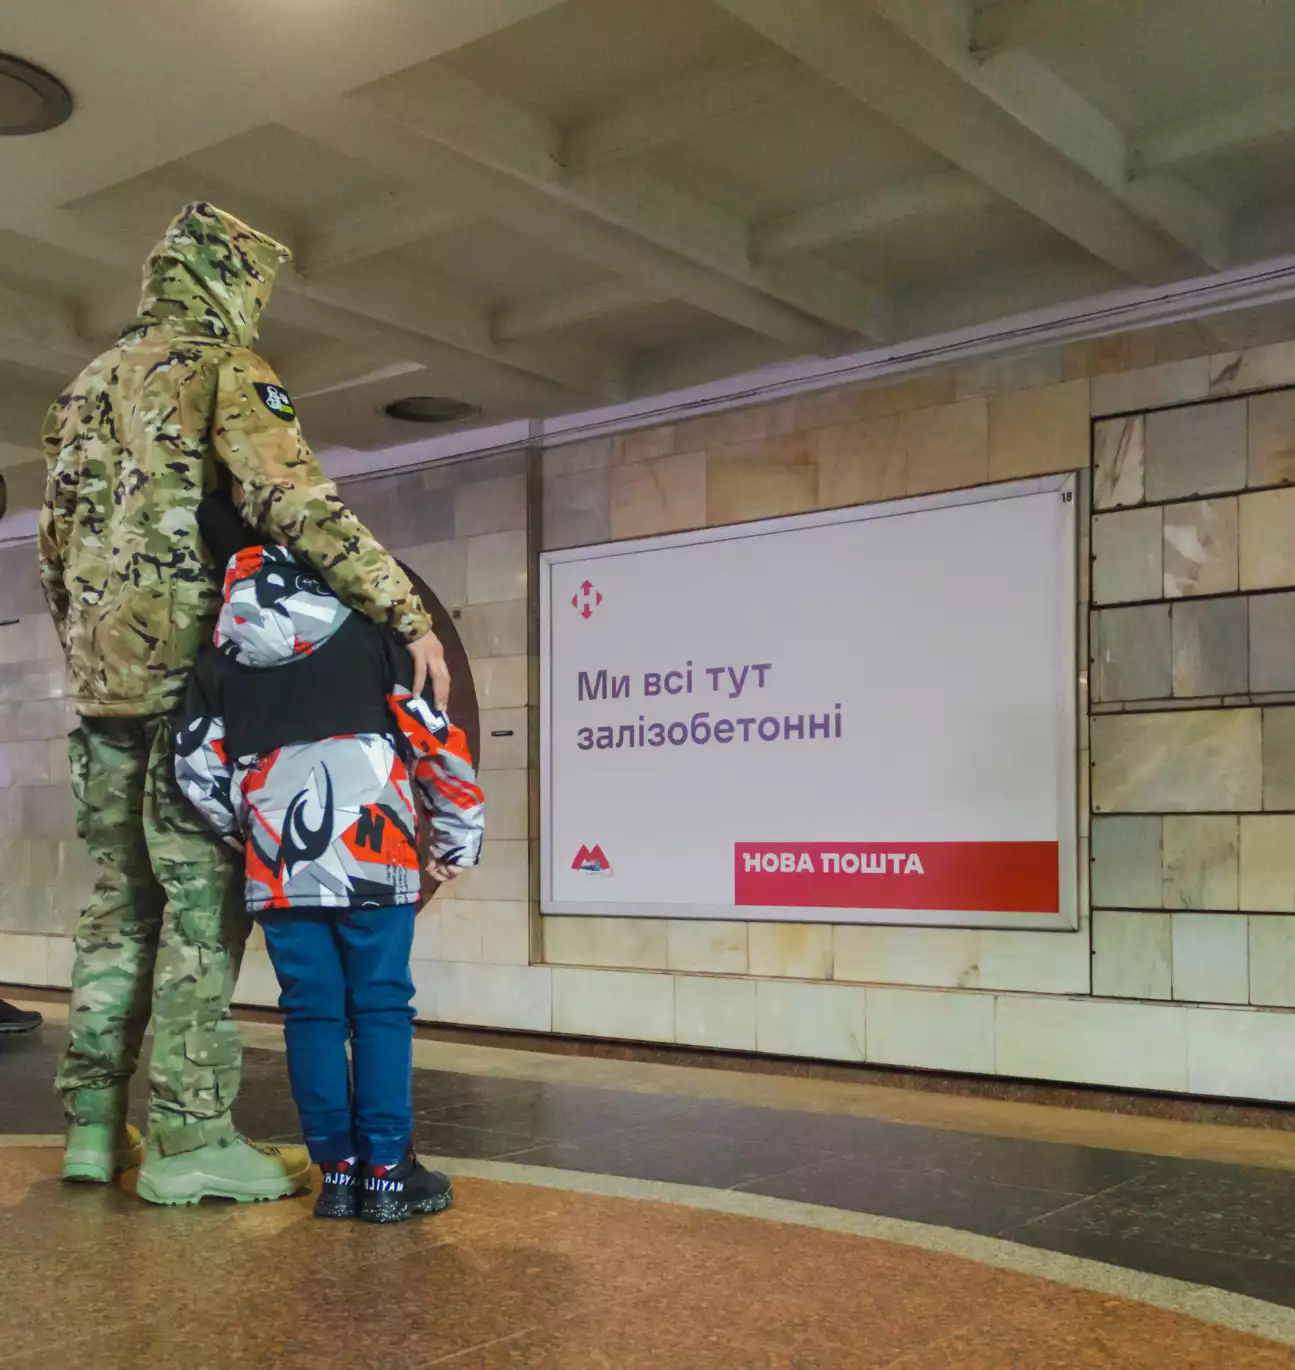 «Харків = Незламність»: у харківському метро з’явилися наснажливі повідомлення для жителів міста